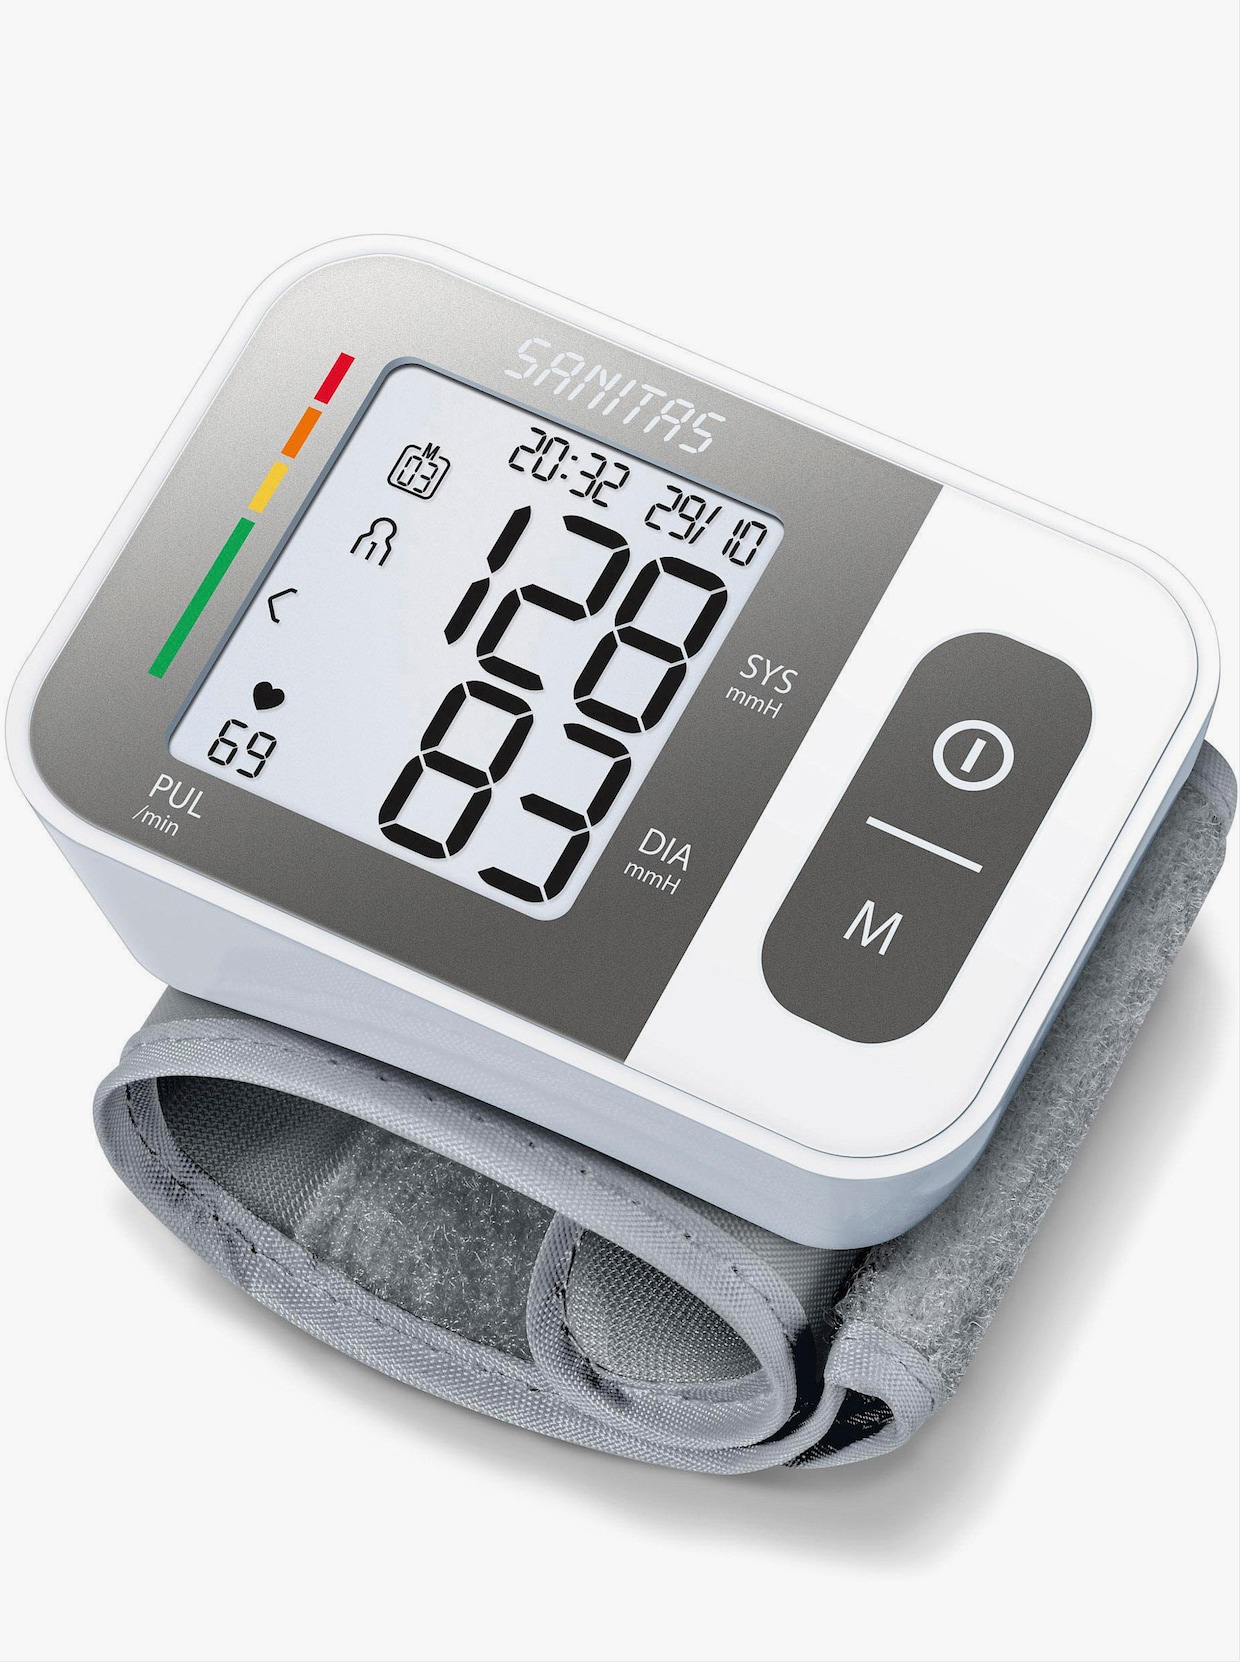 Handgelenk-Blutdruck-Messgerät - weiss